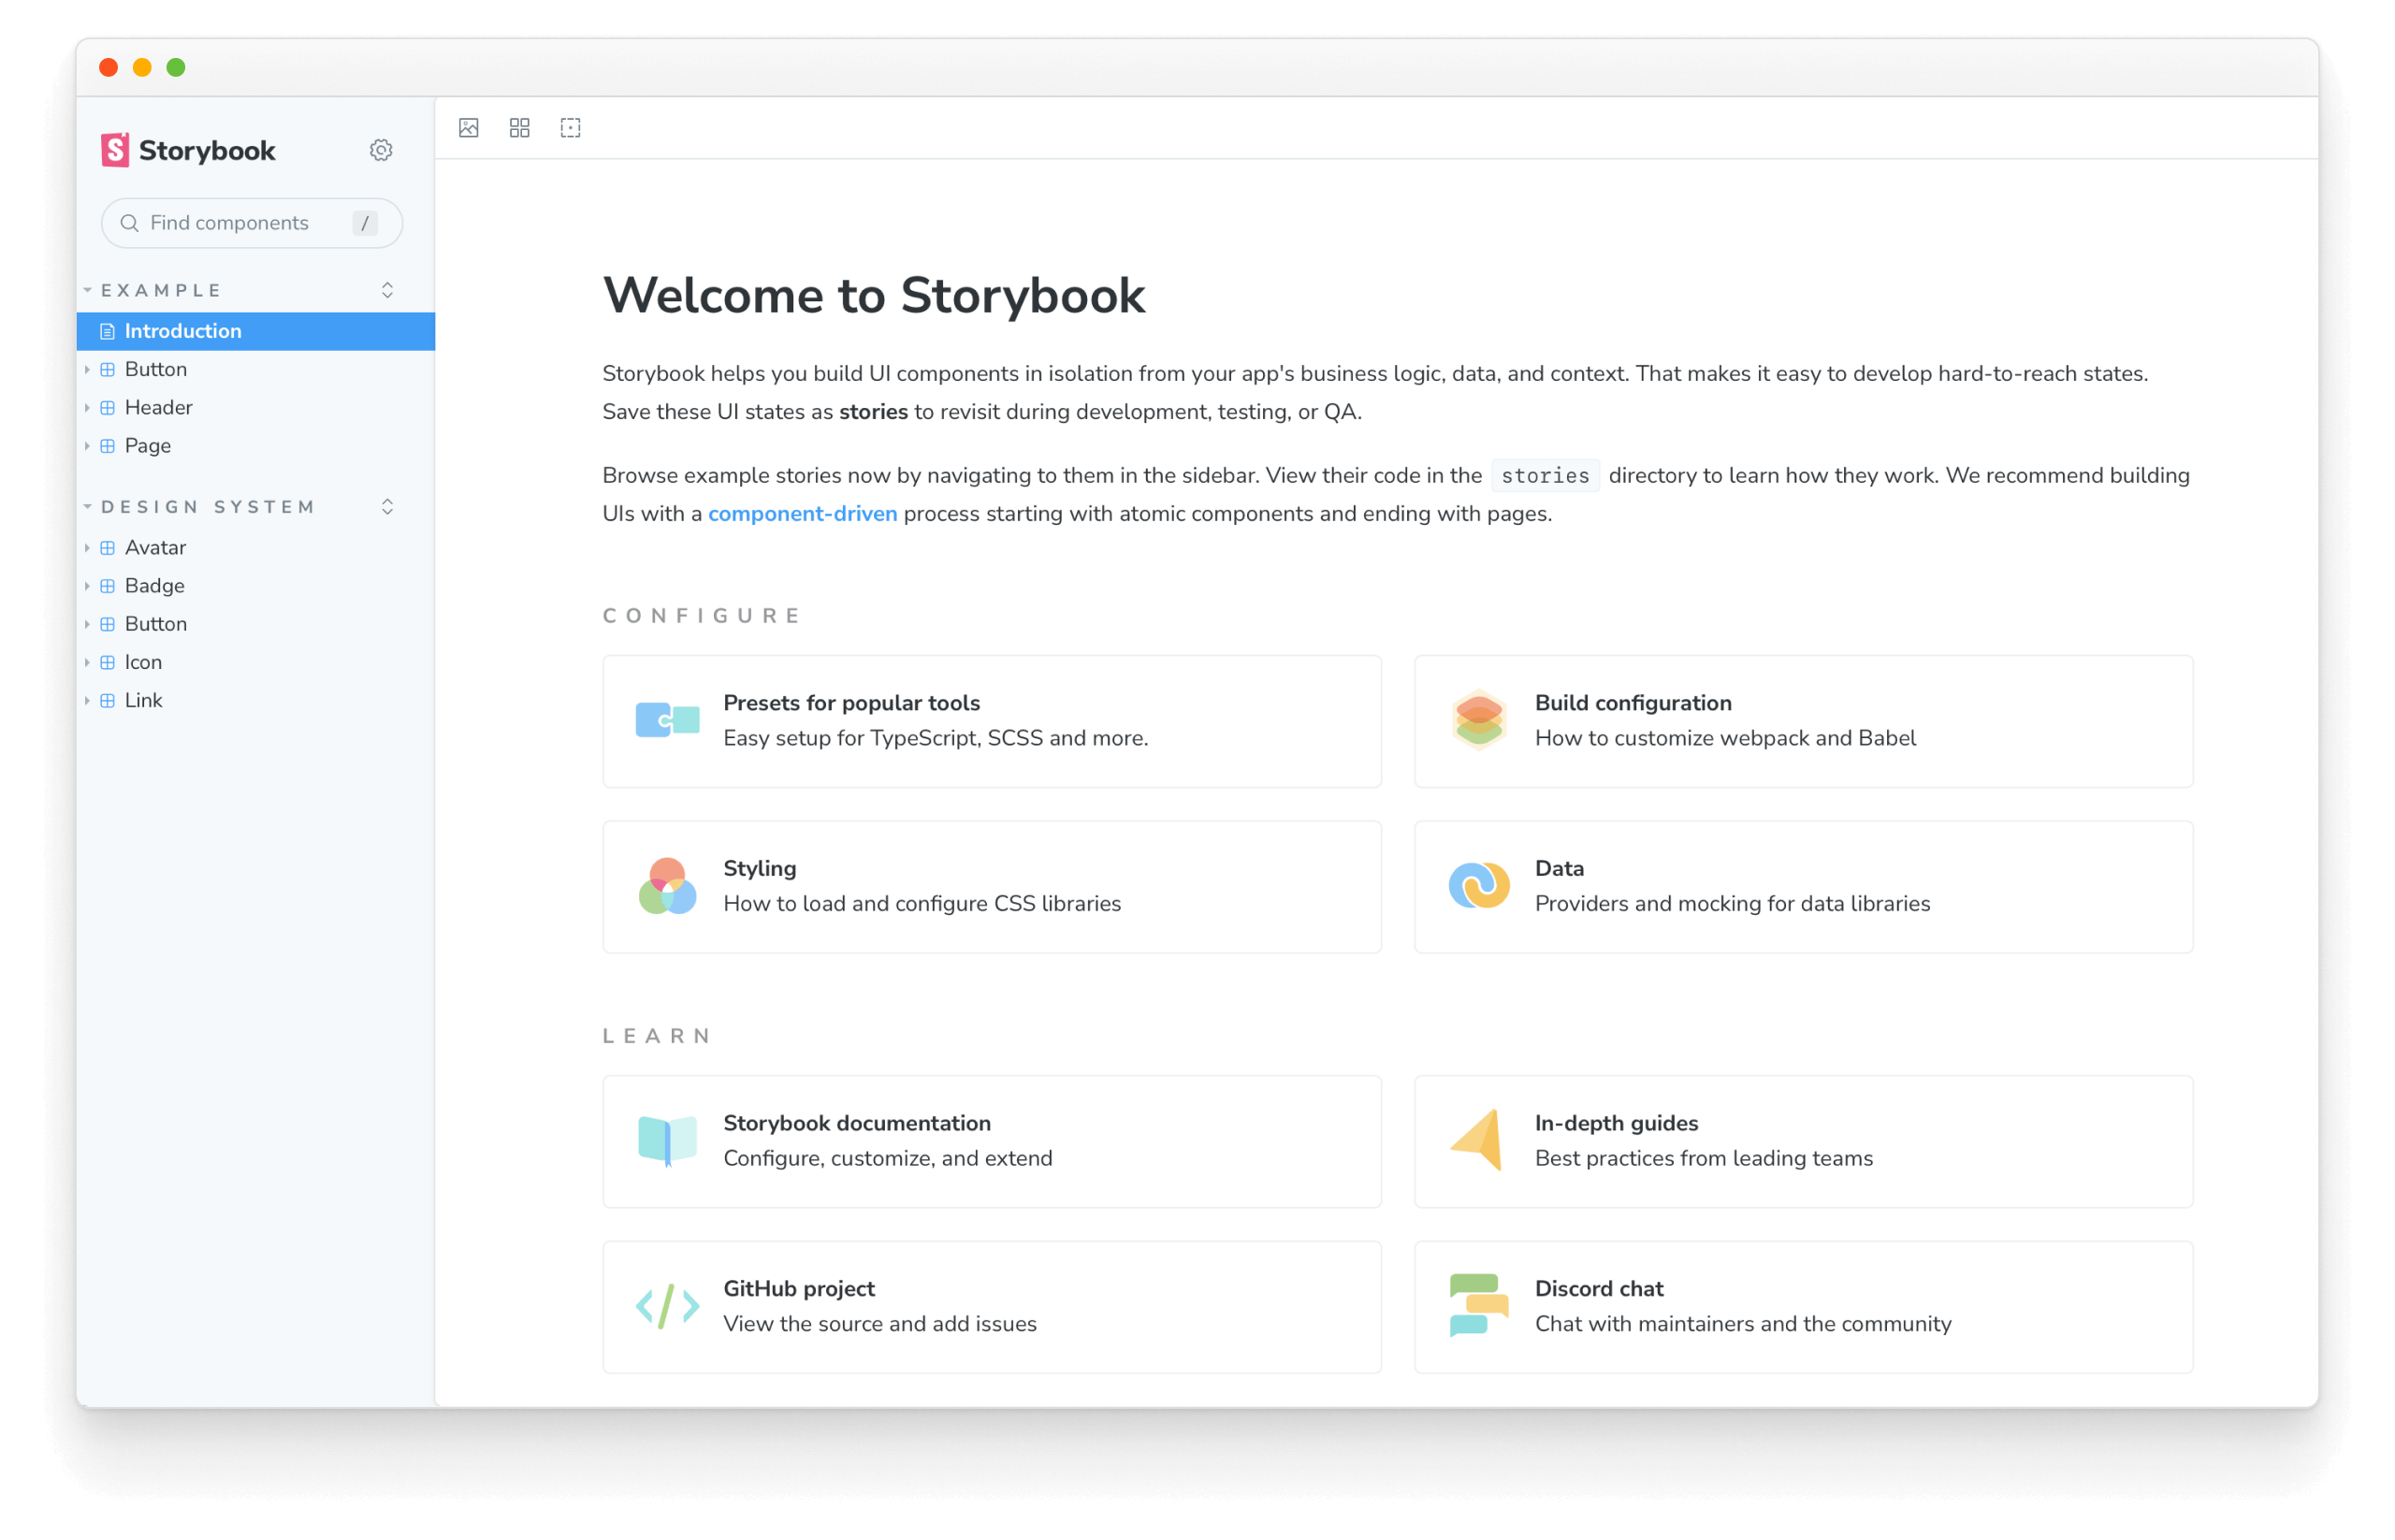 Initial Storybook UI